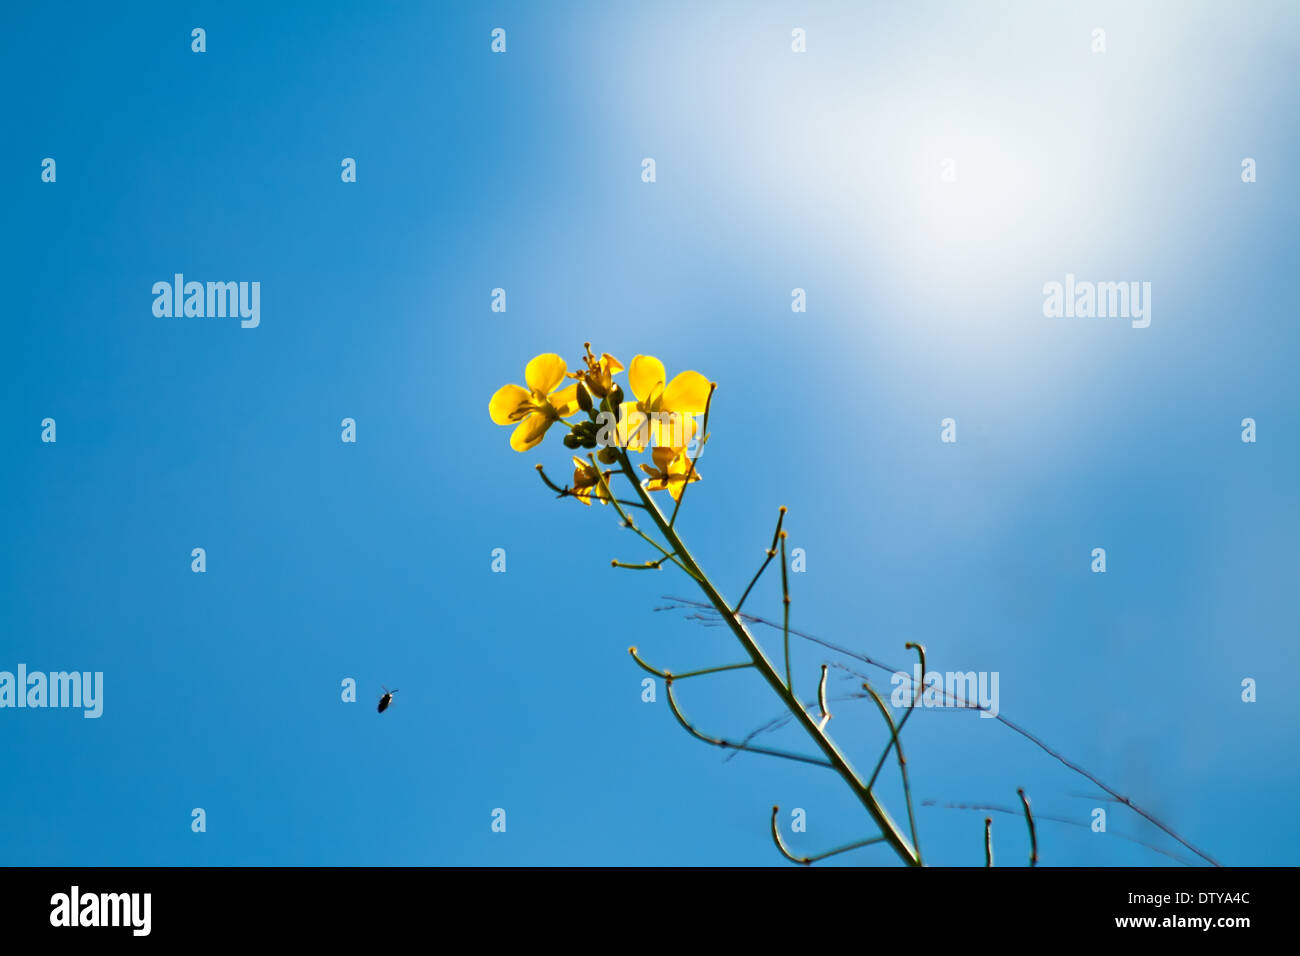 Un'ape volando verso i fiori gialli nel cielo blu, guardando verso l'alto Foto Stock